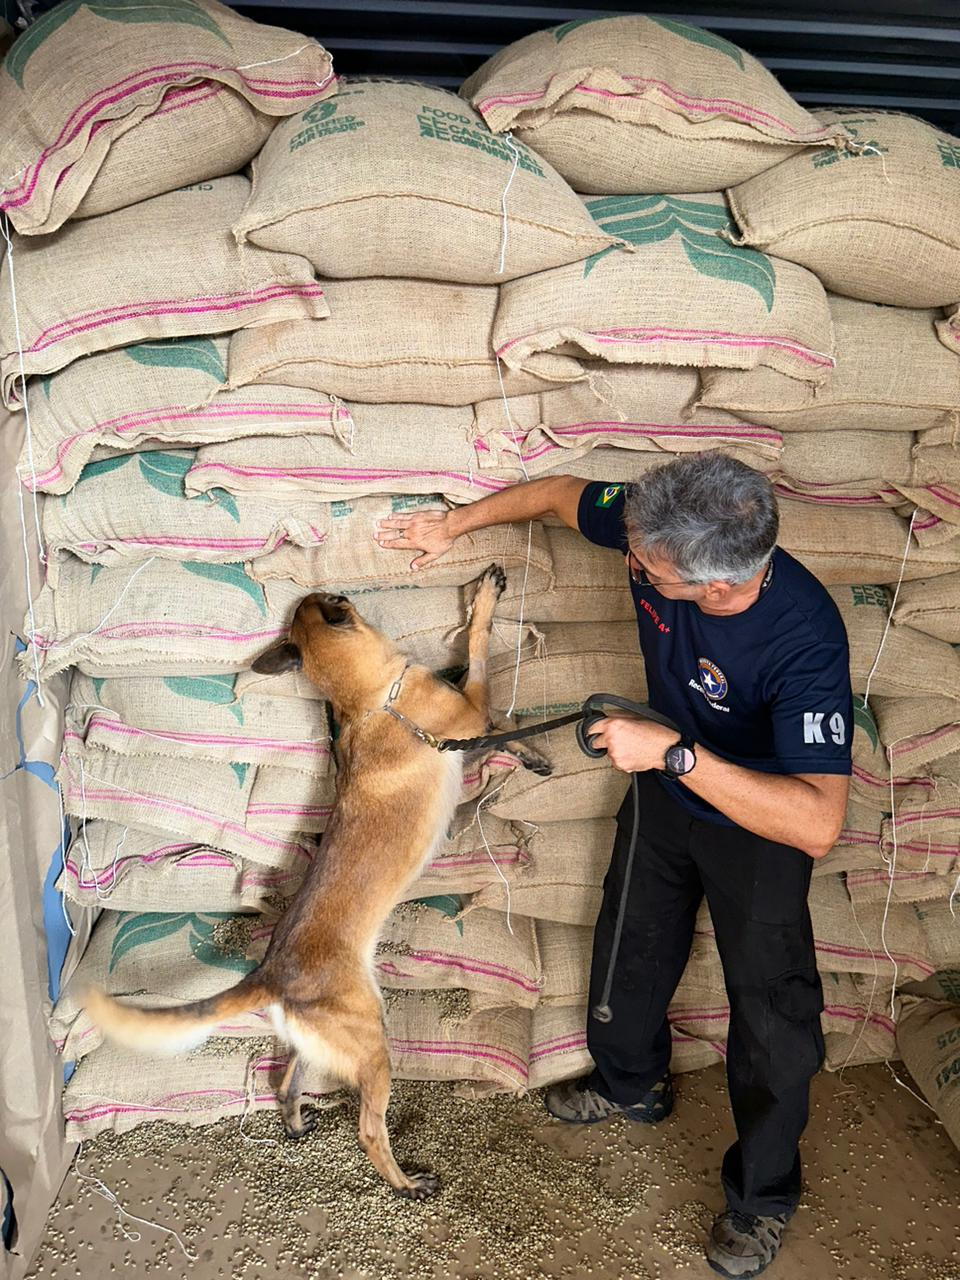 Receita apreende 1,3 tonelada de cocaína em carga de café no Porto do Rio